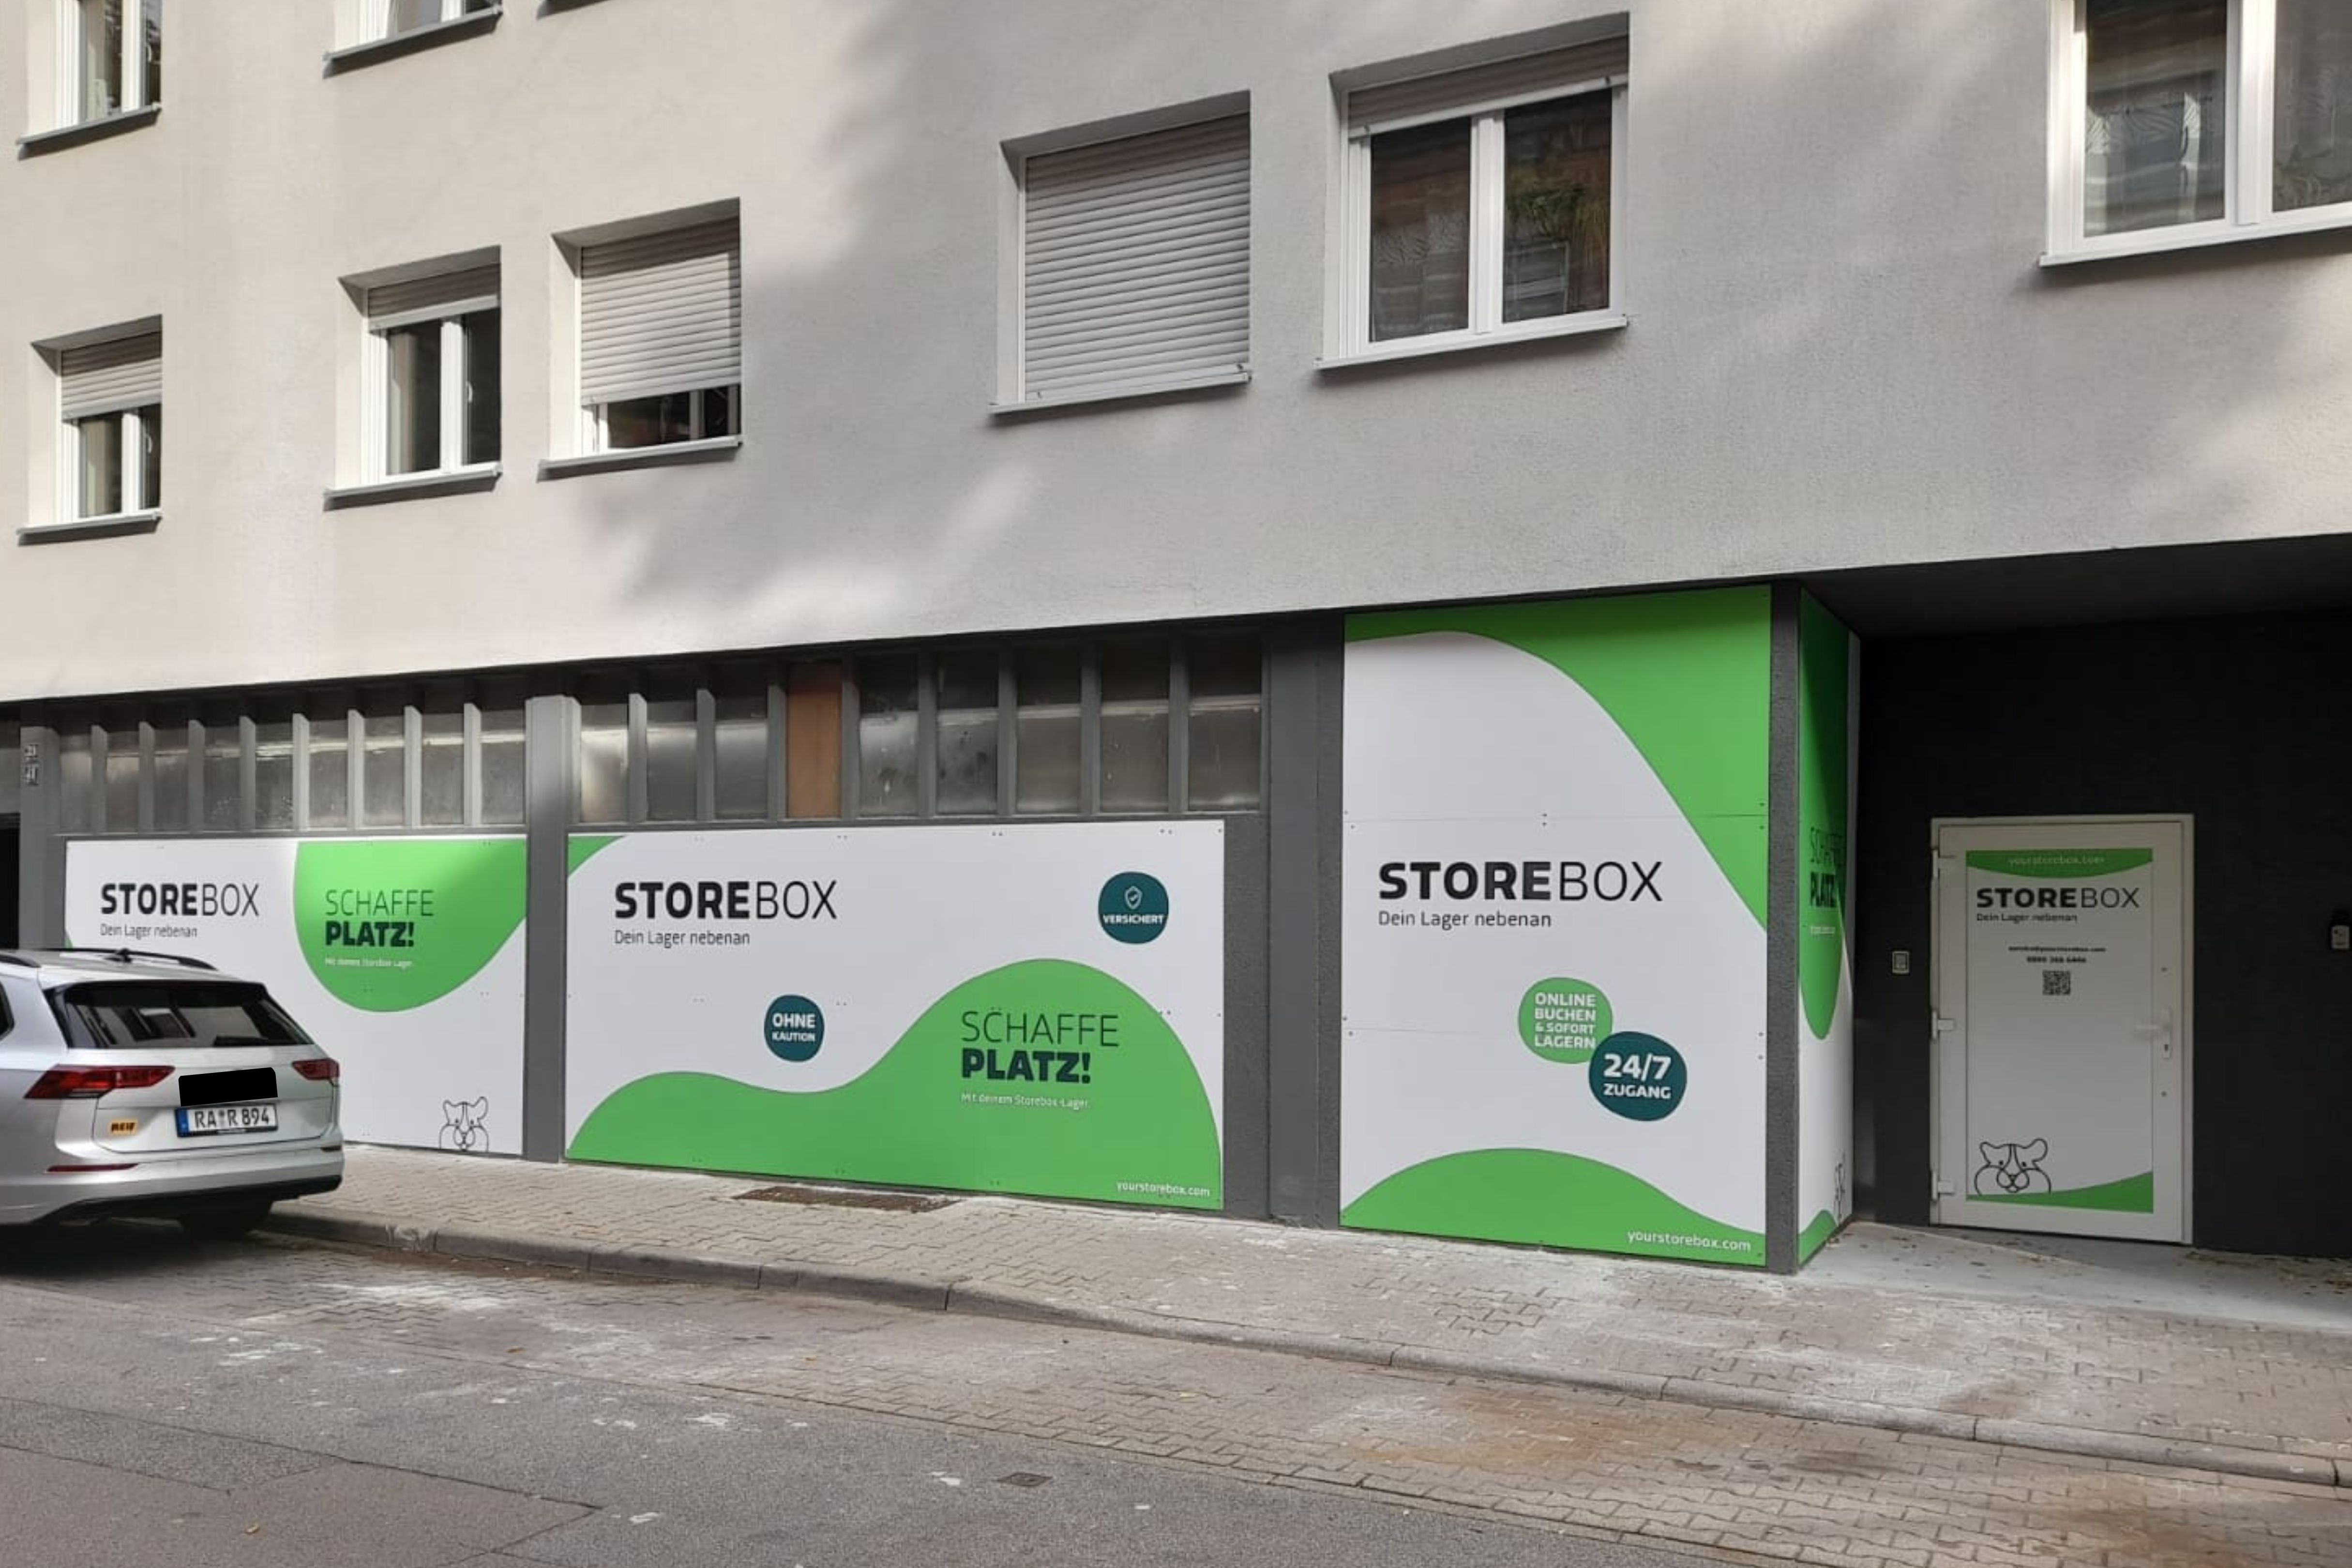 Bild 4 Storebox - Dein Lager nebenan in Mannheim